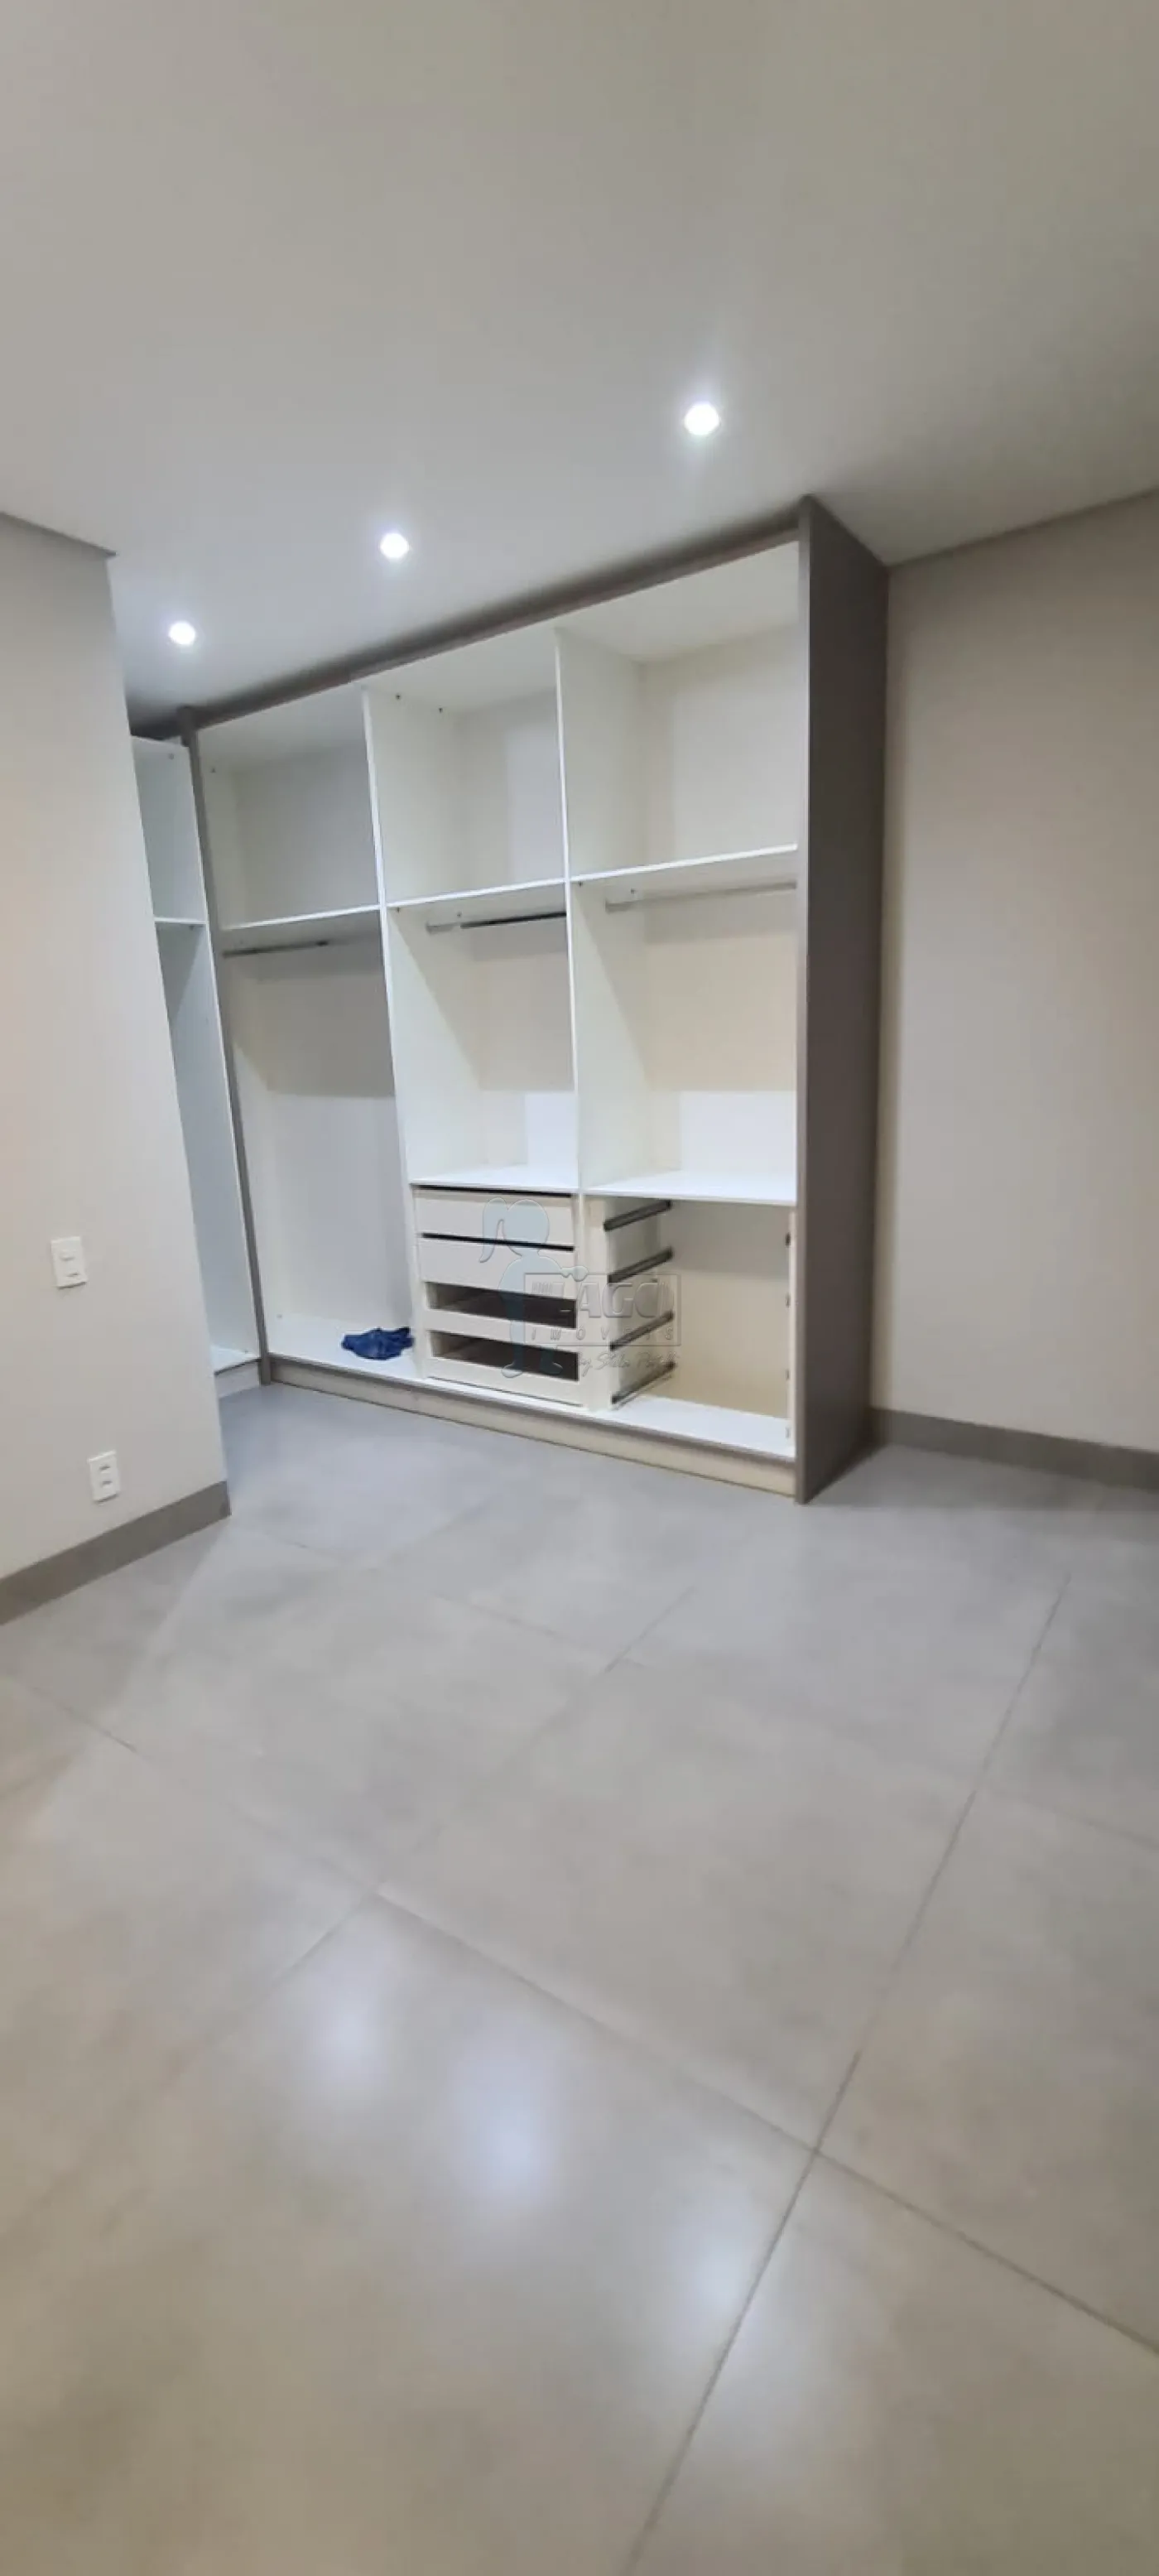 Comprar Casa condomínio / Padrão em Ribeirão Preto R$ 1.100.000,00 - Foto 5